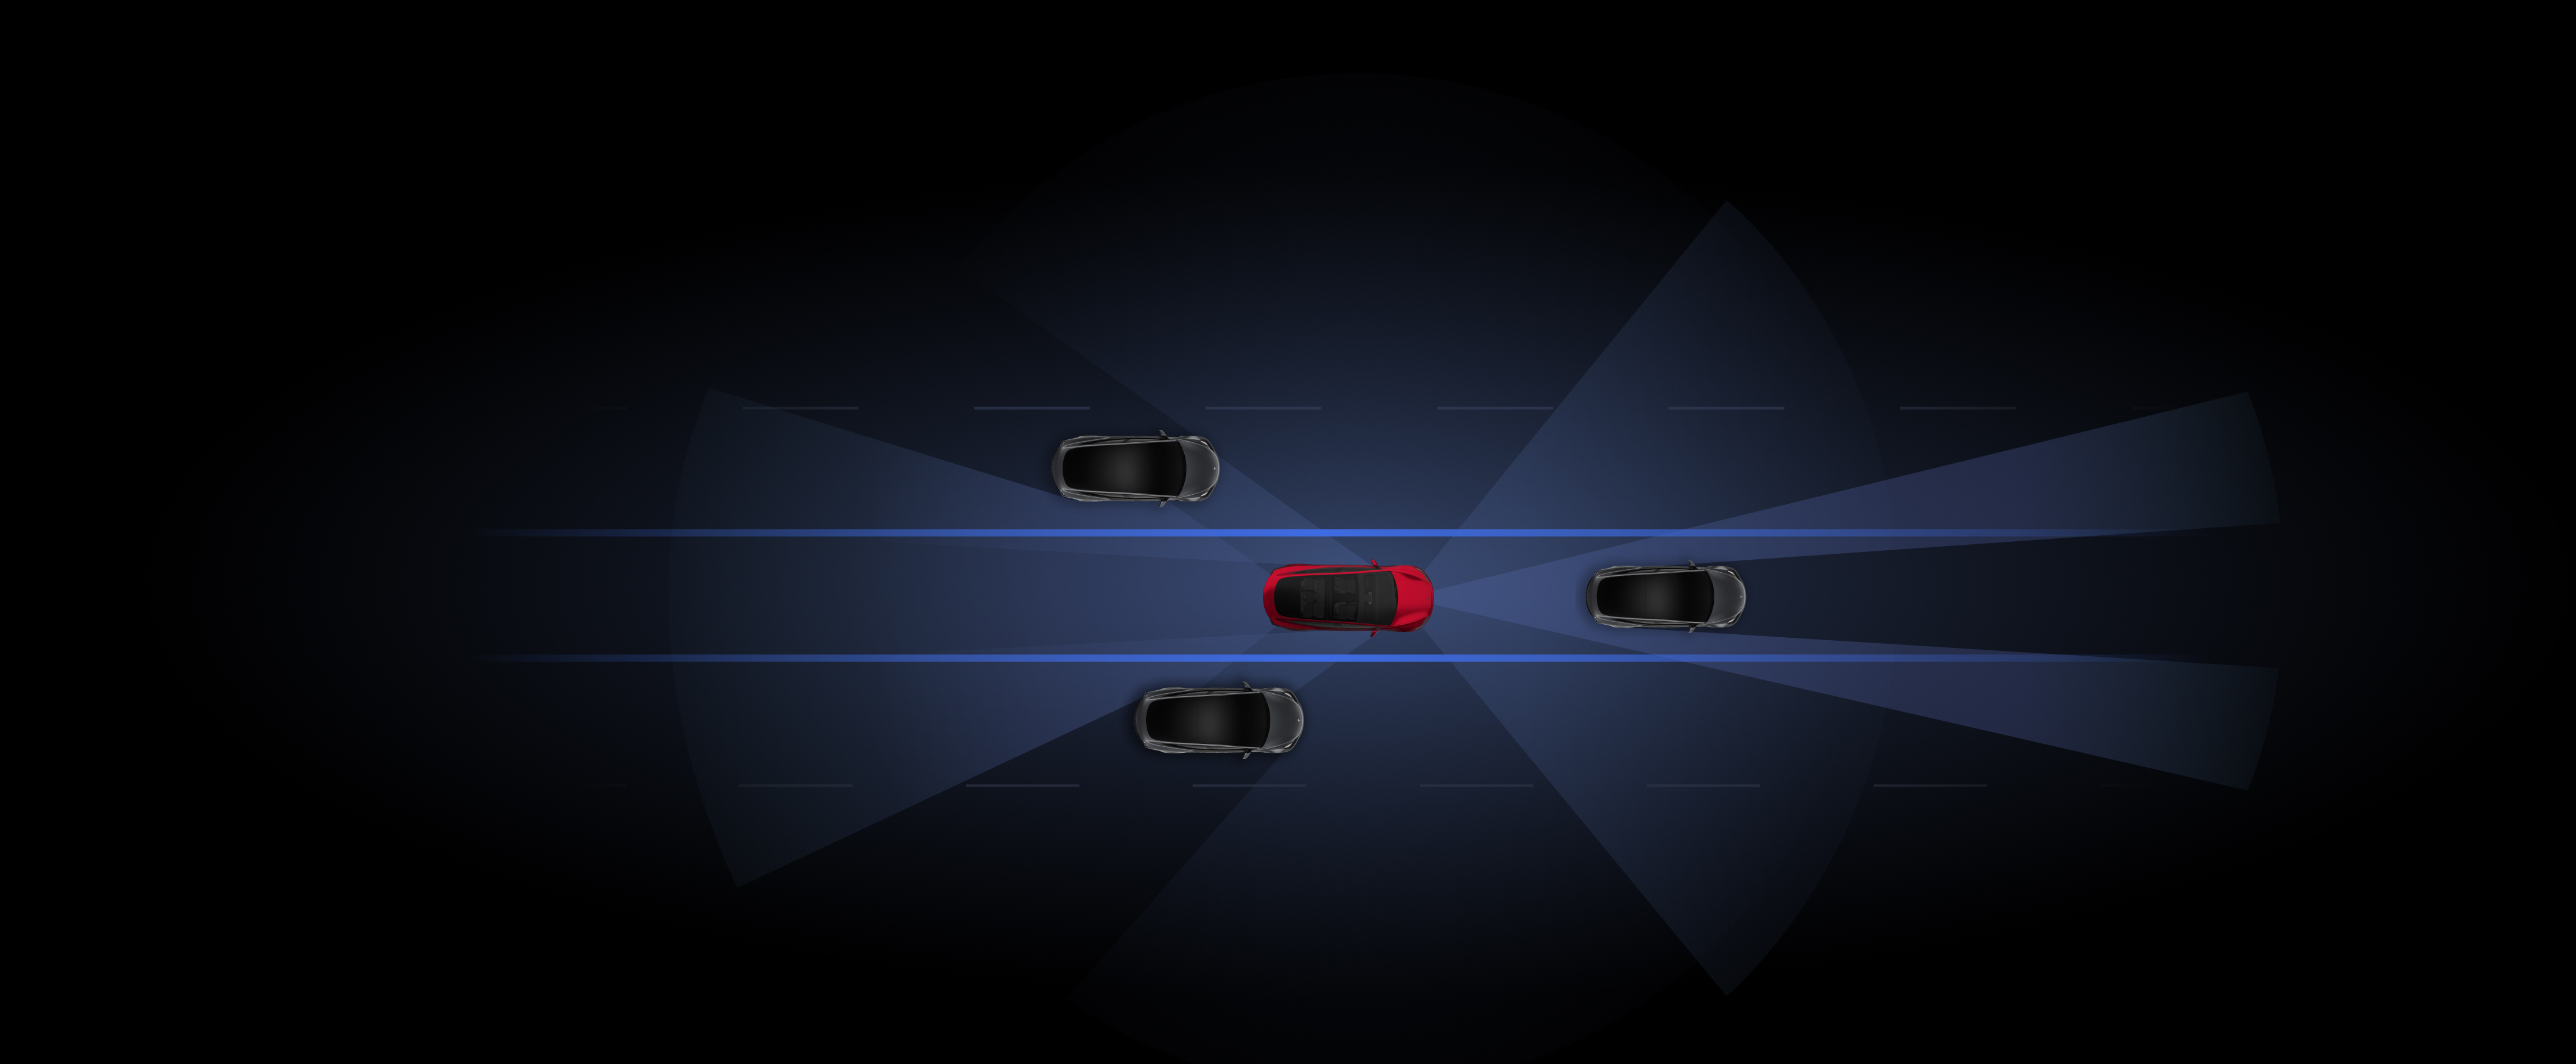 การแสดงภาพรถ Tesla สีเทาและสีแดงที่กำลังใช้ฟีเจอร์ Autopilot 